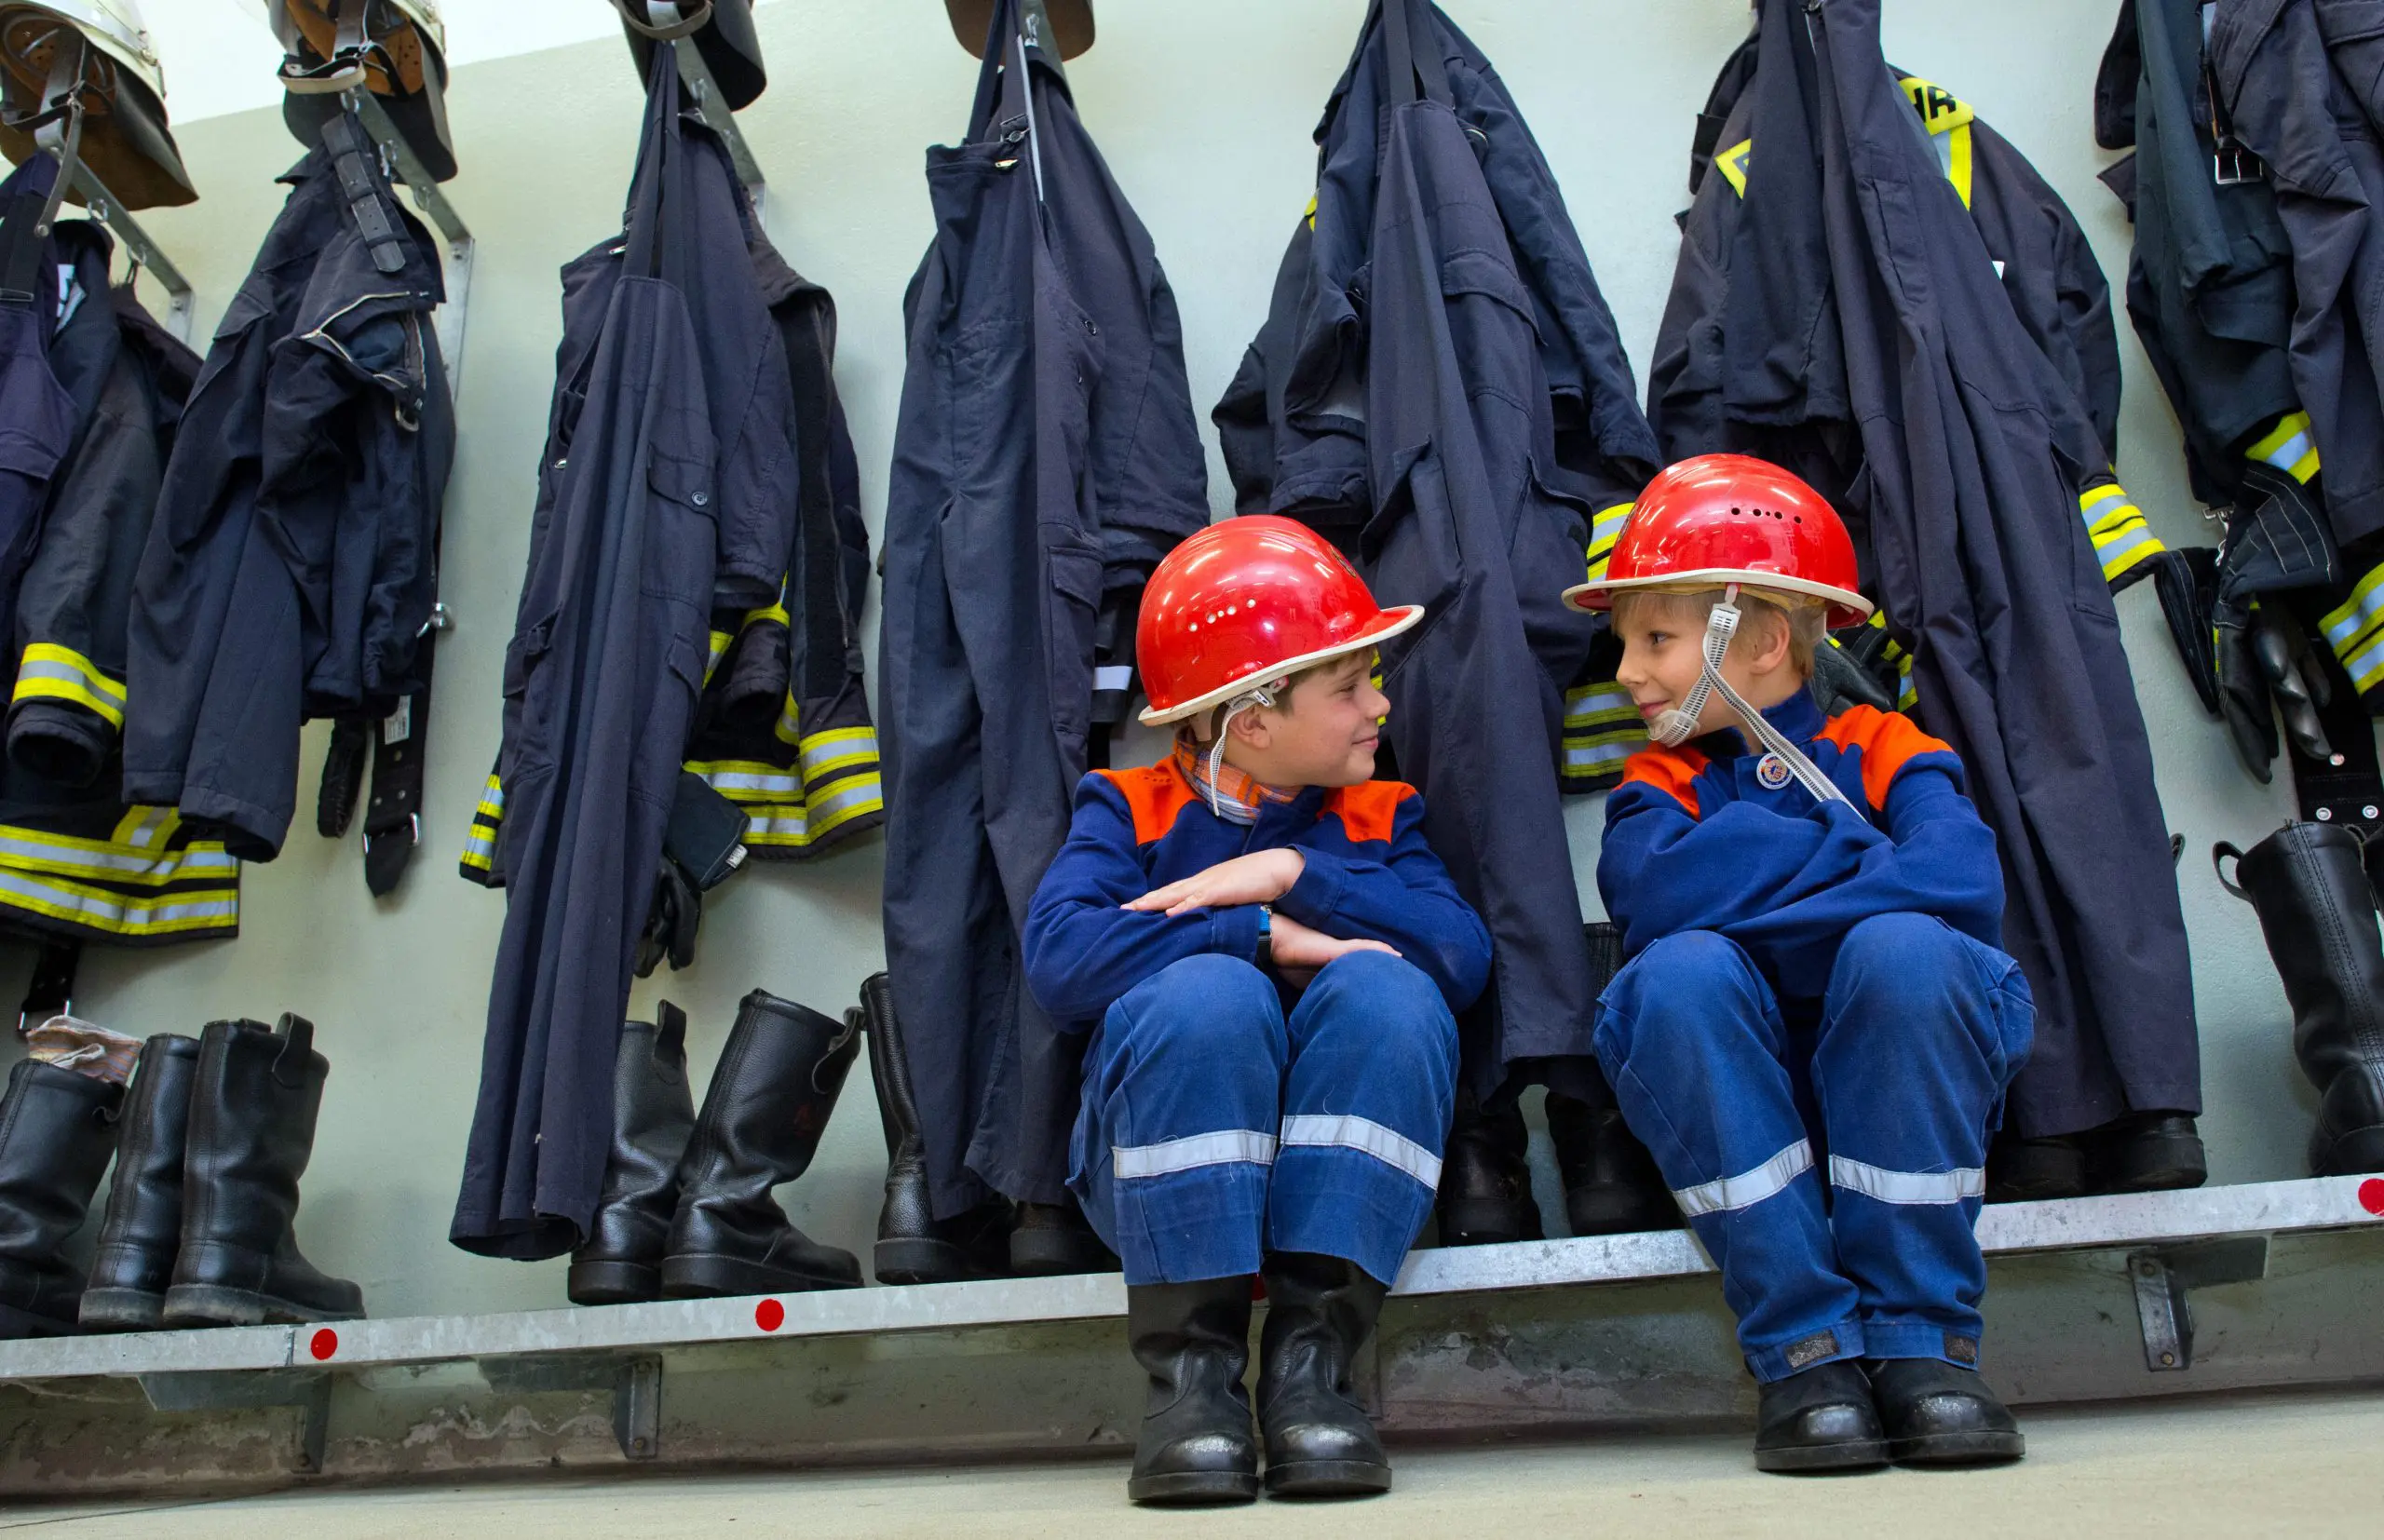 Nachwuchs für die Feuerwehr - zwei Kinder in Feuerwehr-Anzügen sitzen in der Garderobe vor Feuerwehrjacken